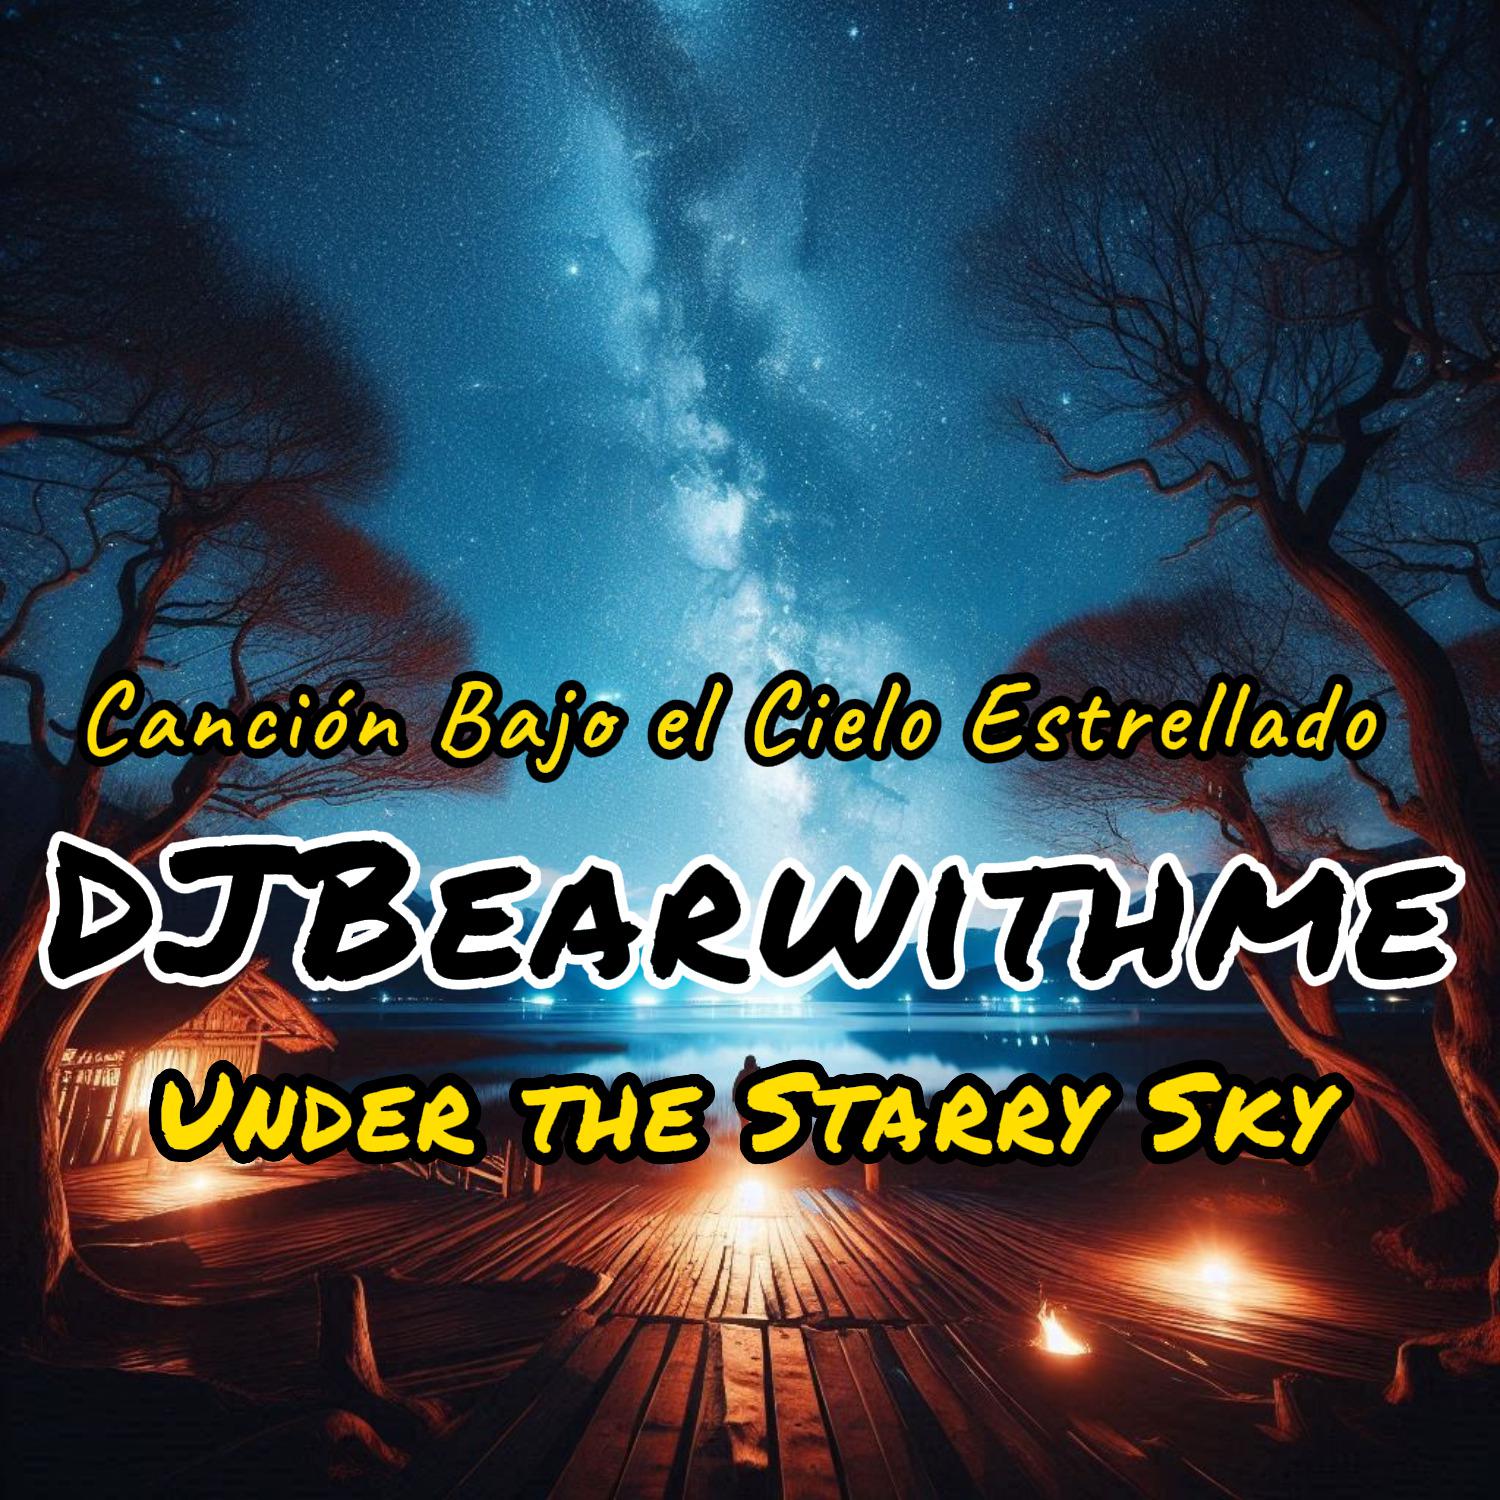 DJBearwithme - Canción Bajo el Cielo Estrellado Under the Starry Sky